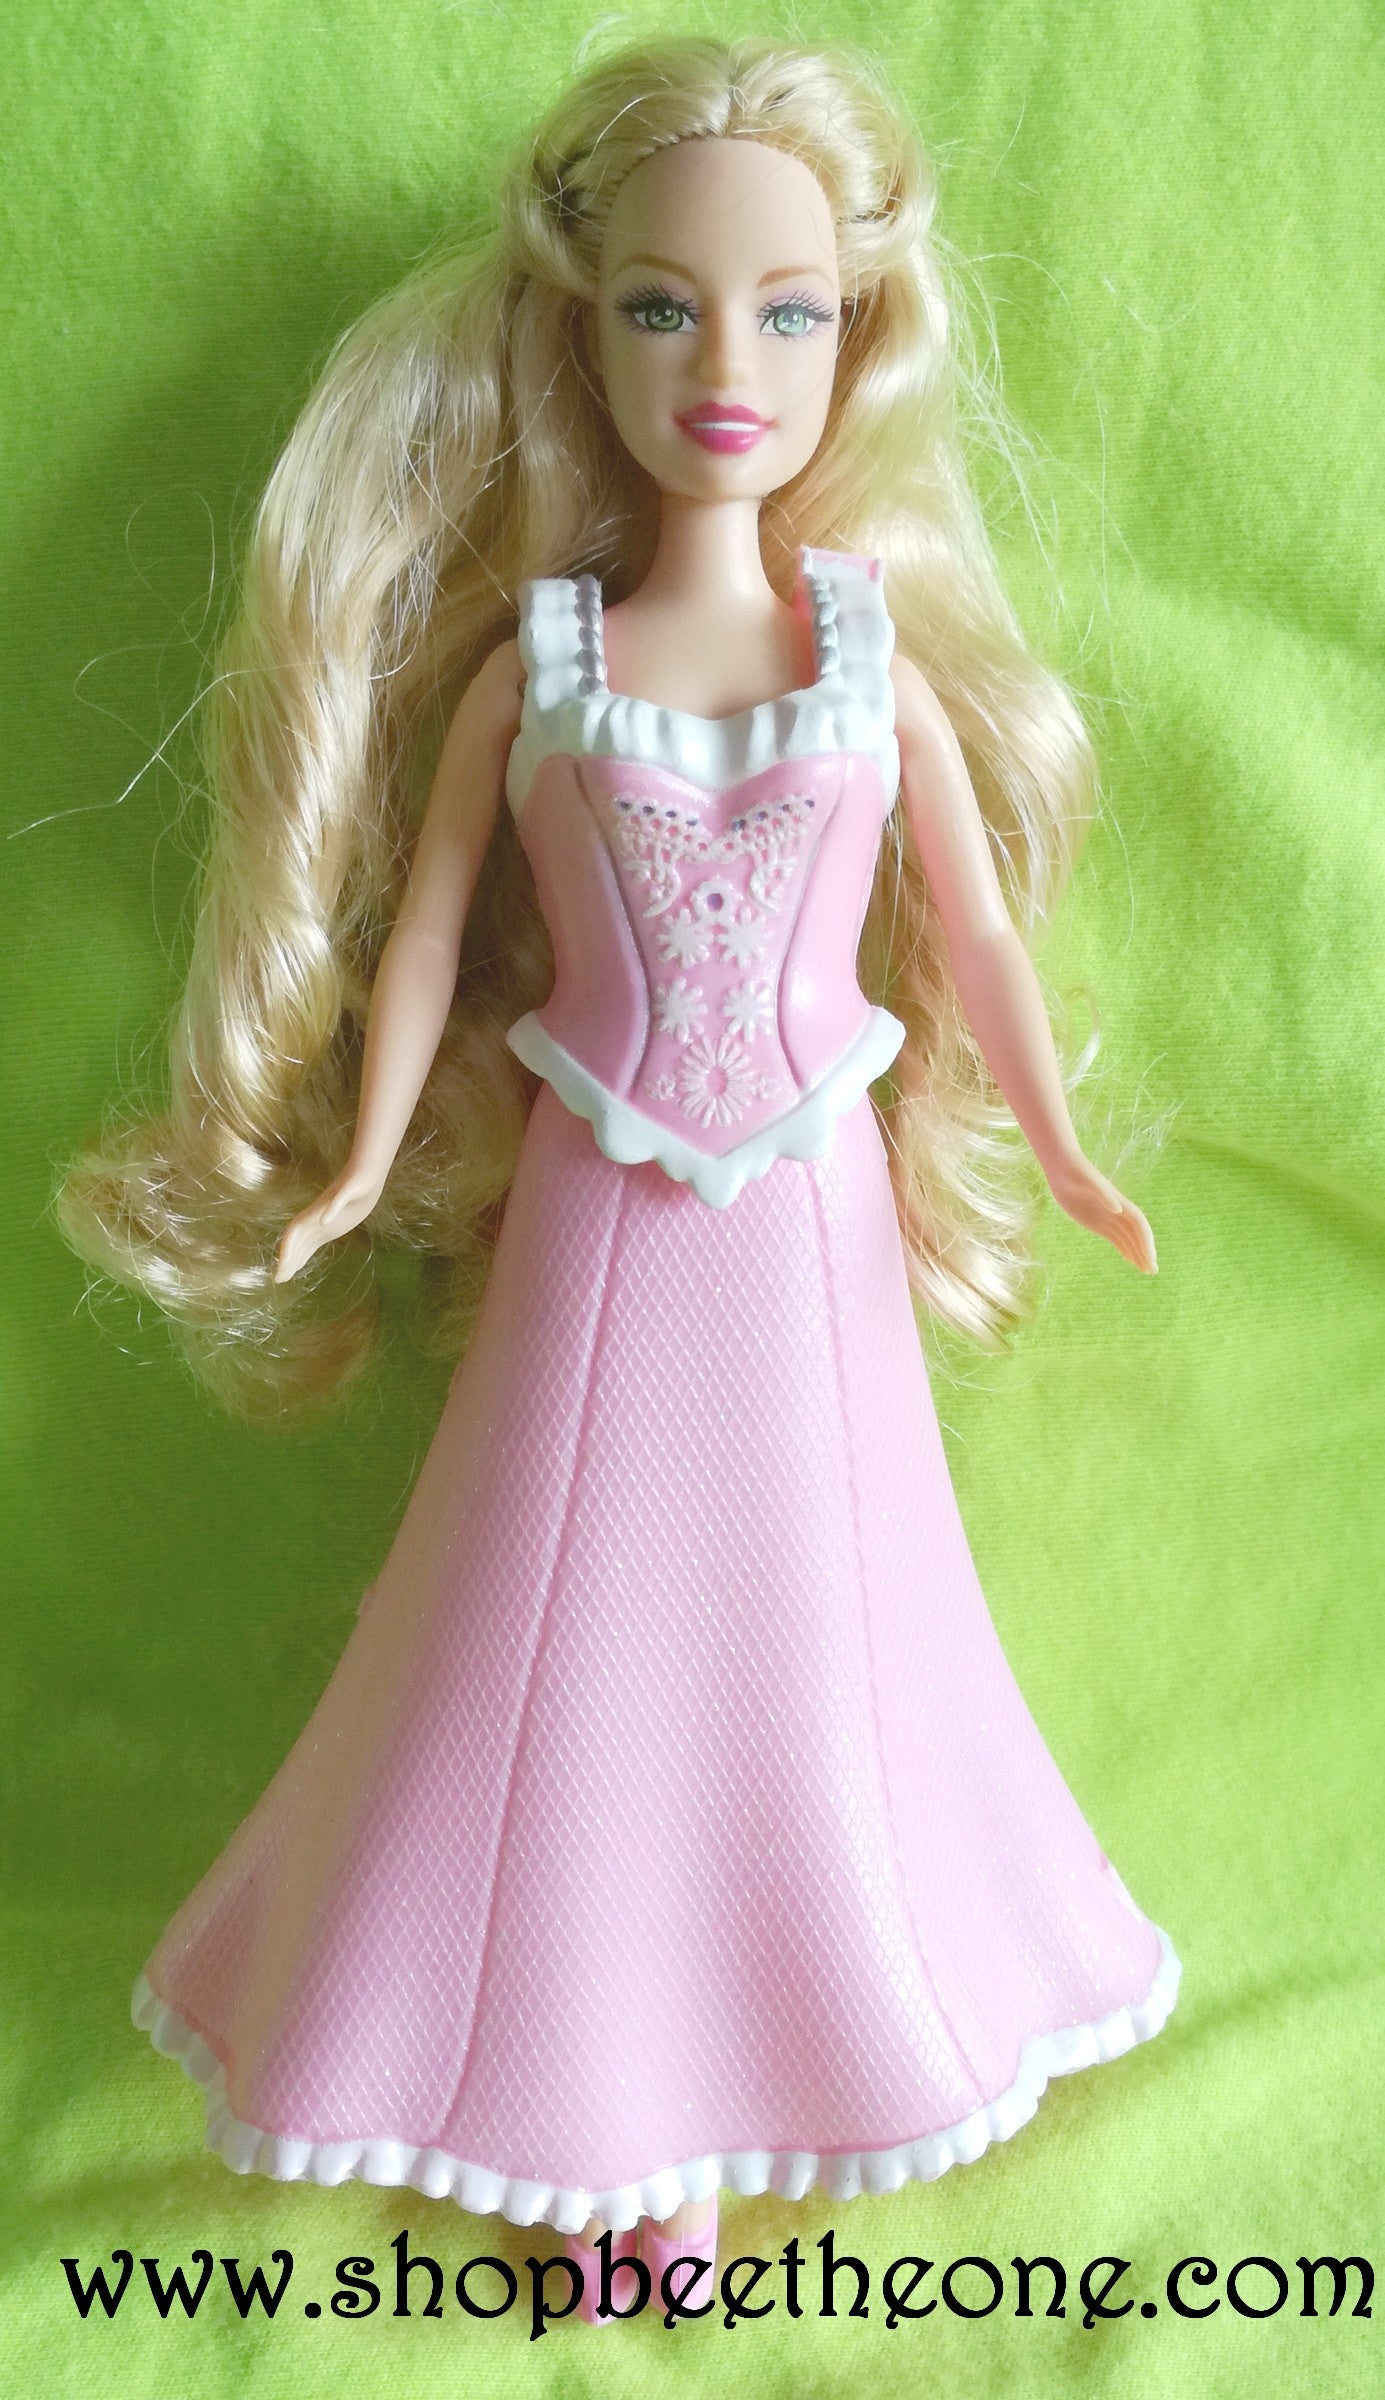 Barbie Princesse Clara Mini Kingdom L2719 - Mattel 2006 - Mini